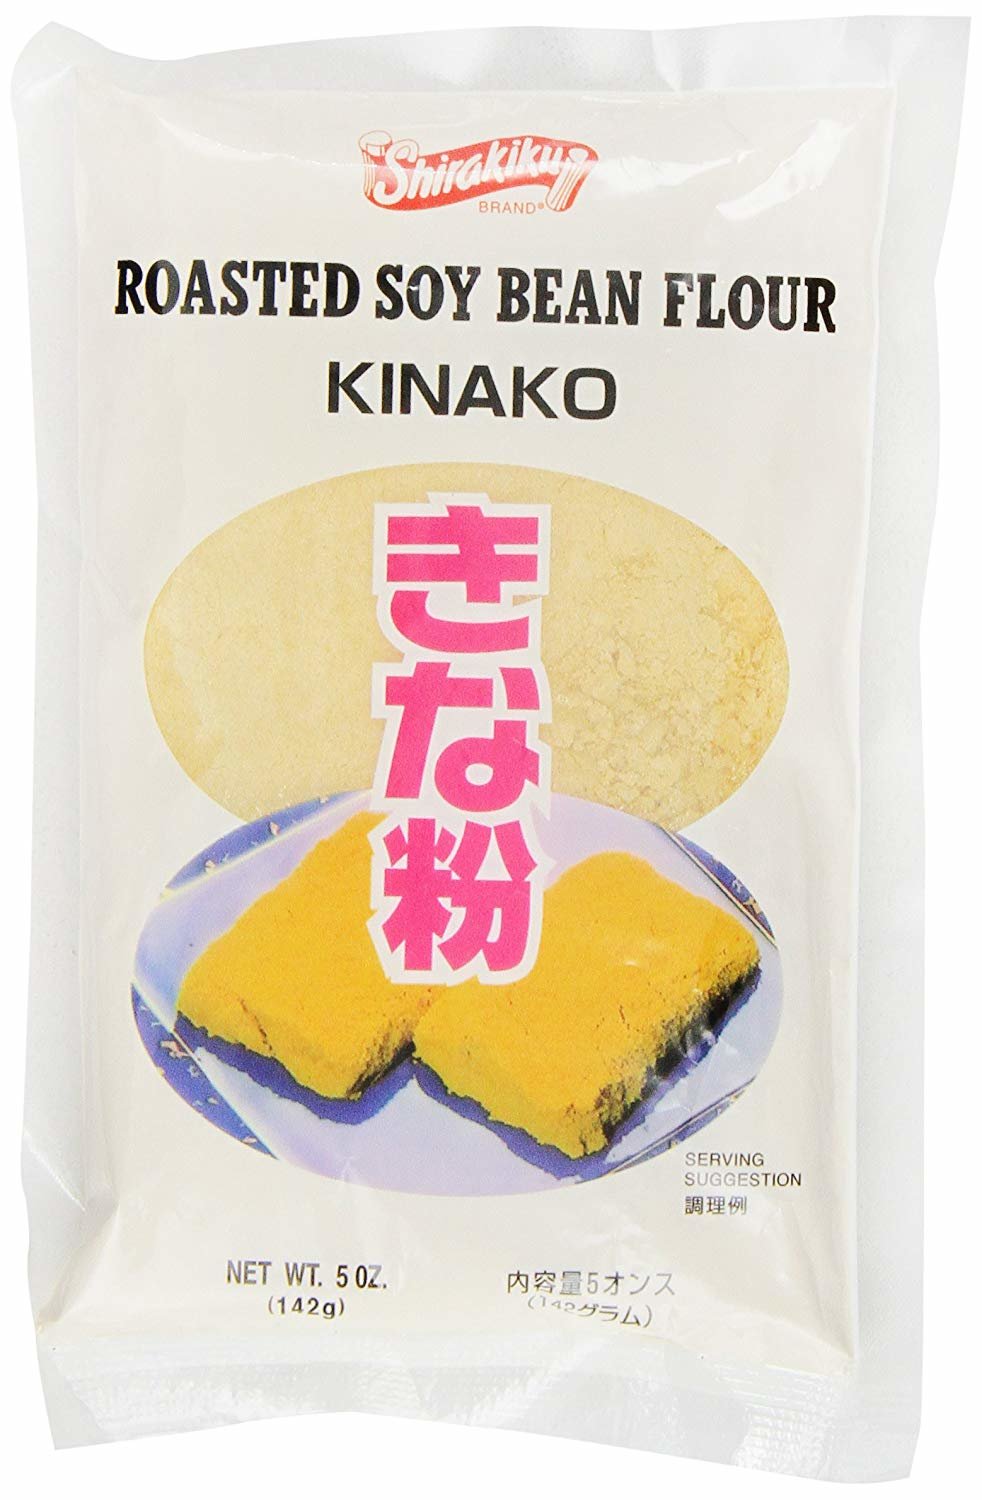 bag of Kinako